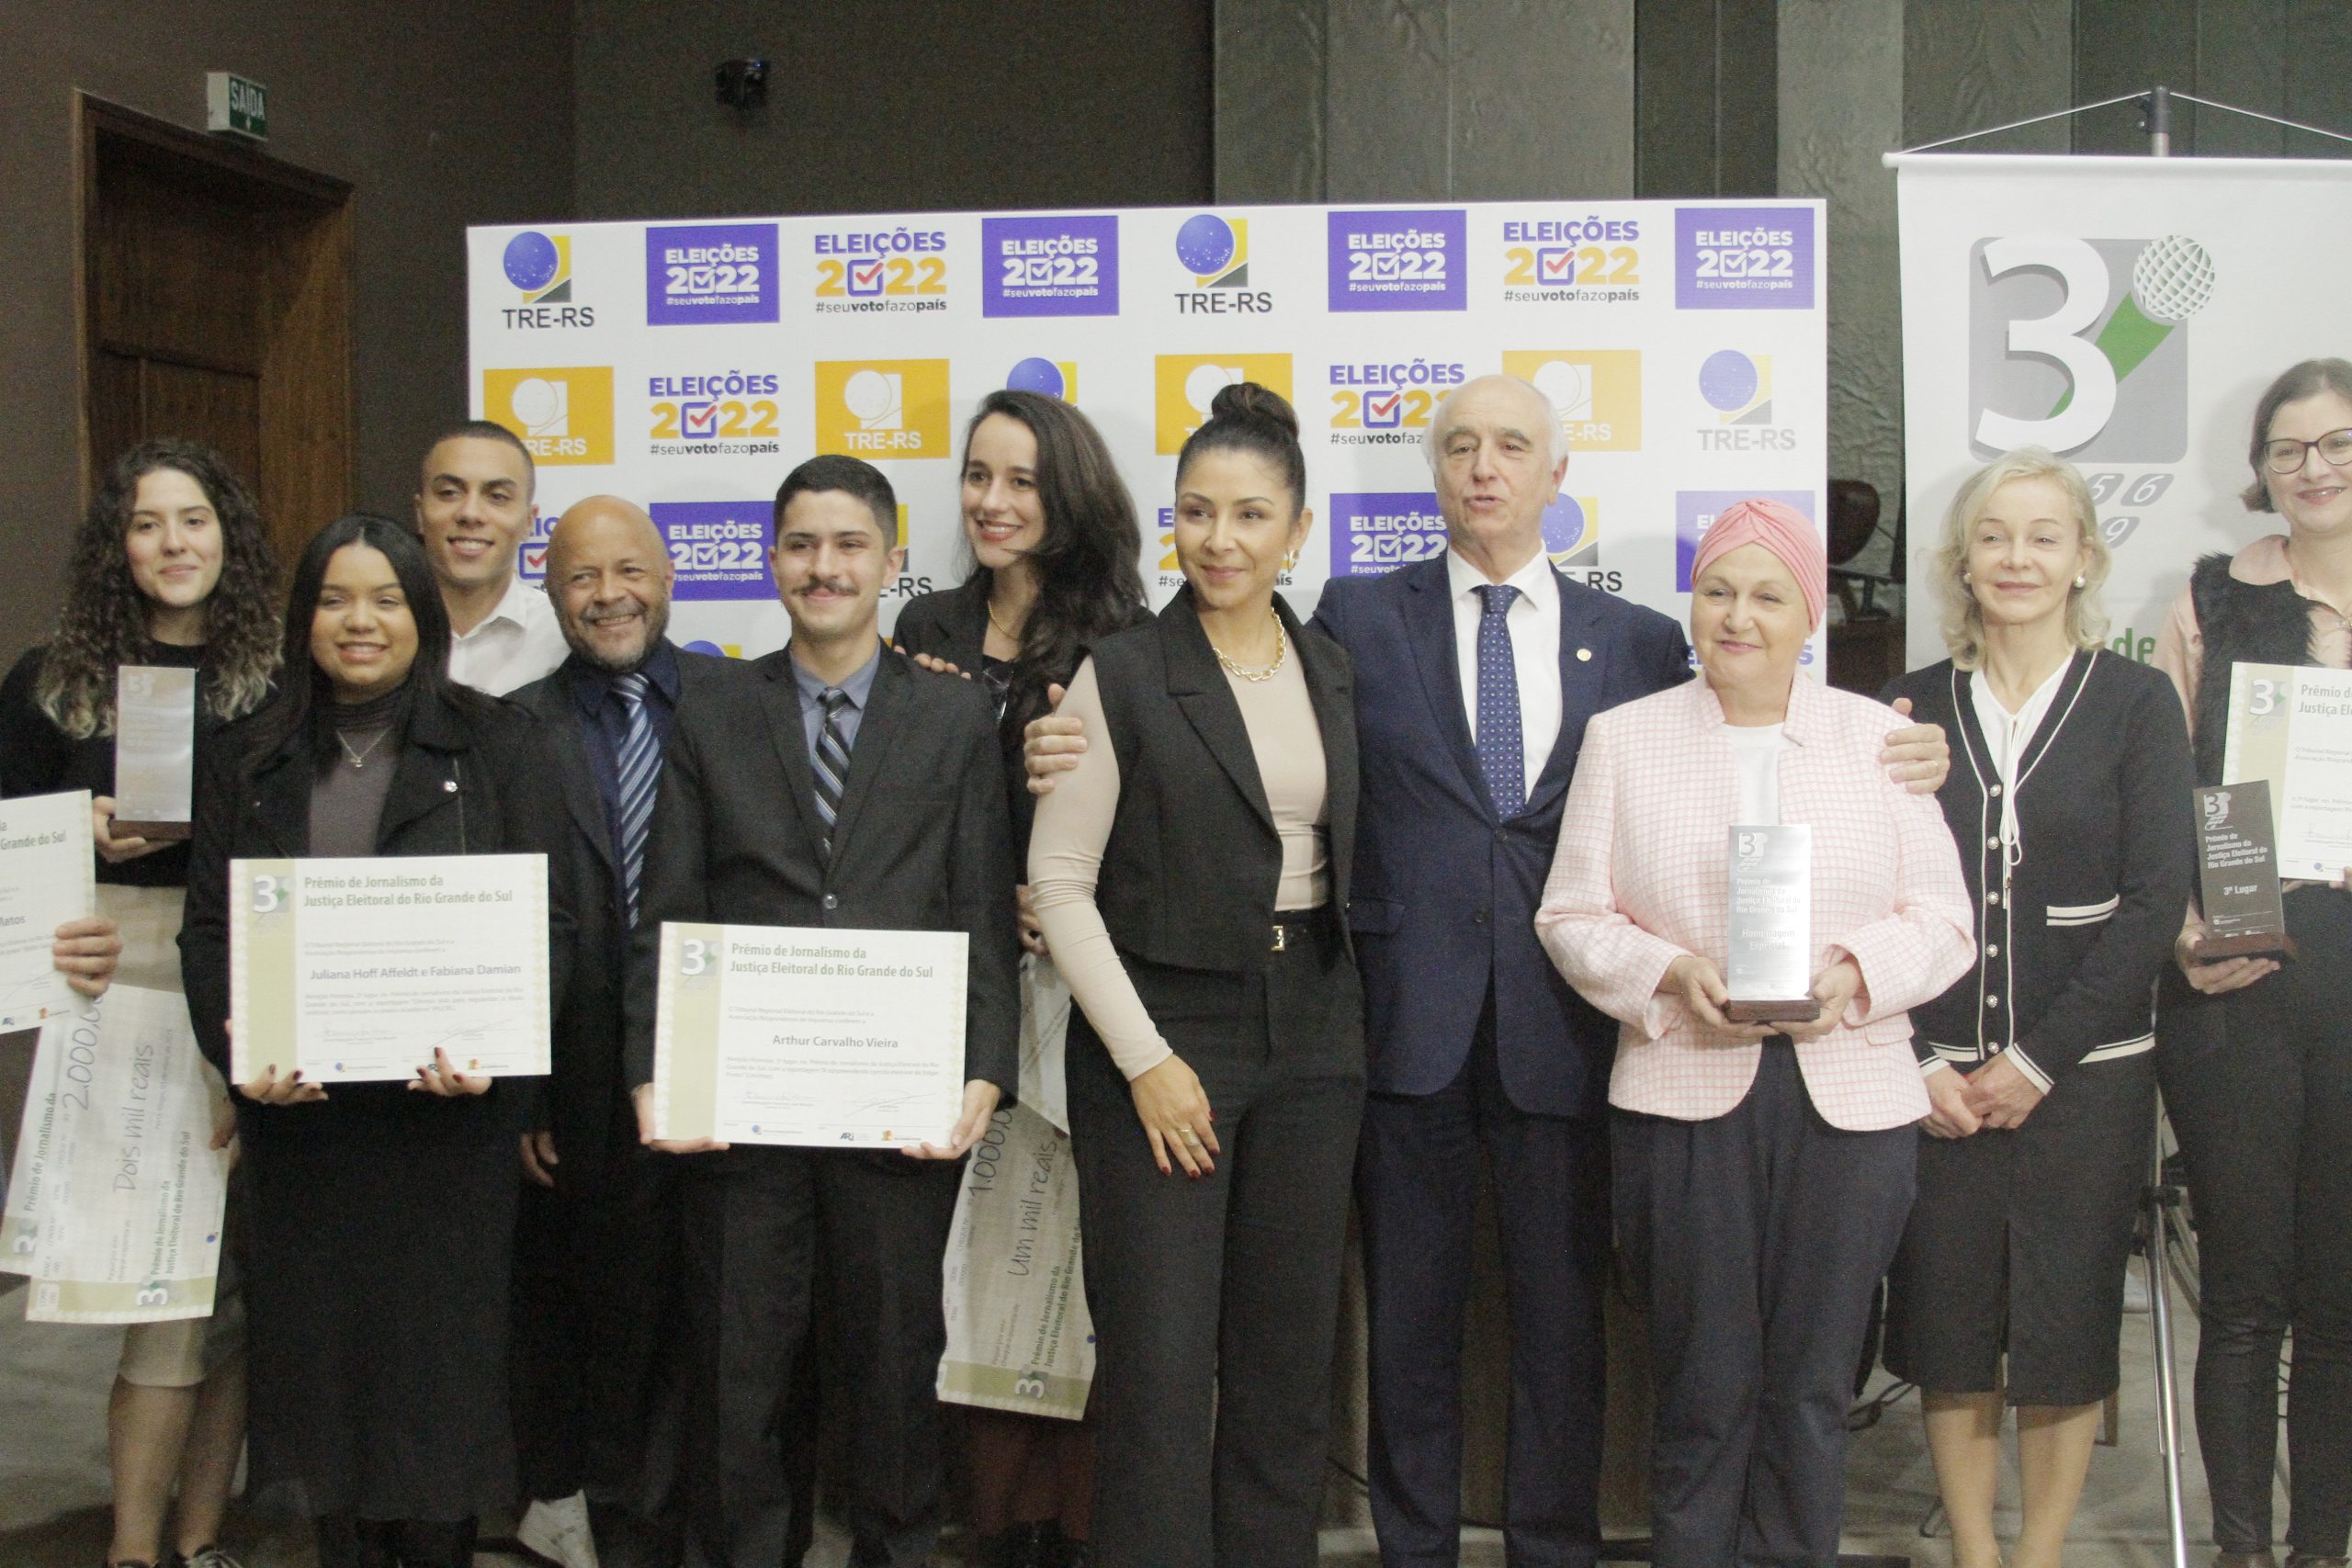 Alunos da Unisinos recebem prêmio de Jornalismo do TRE